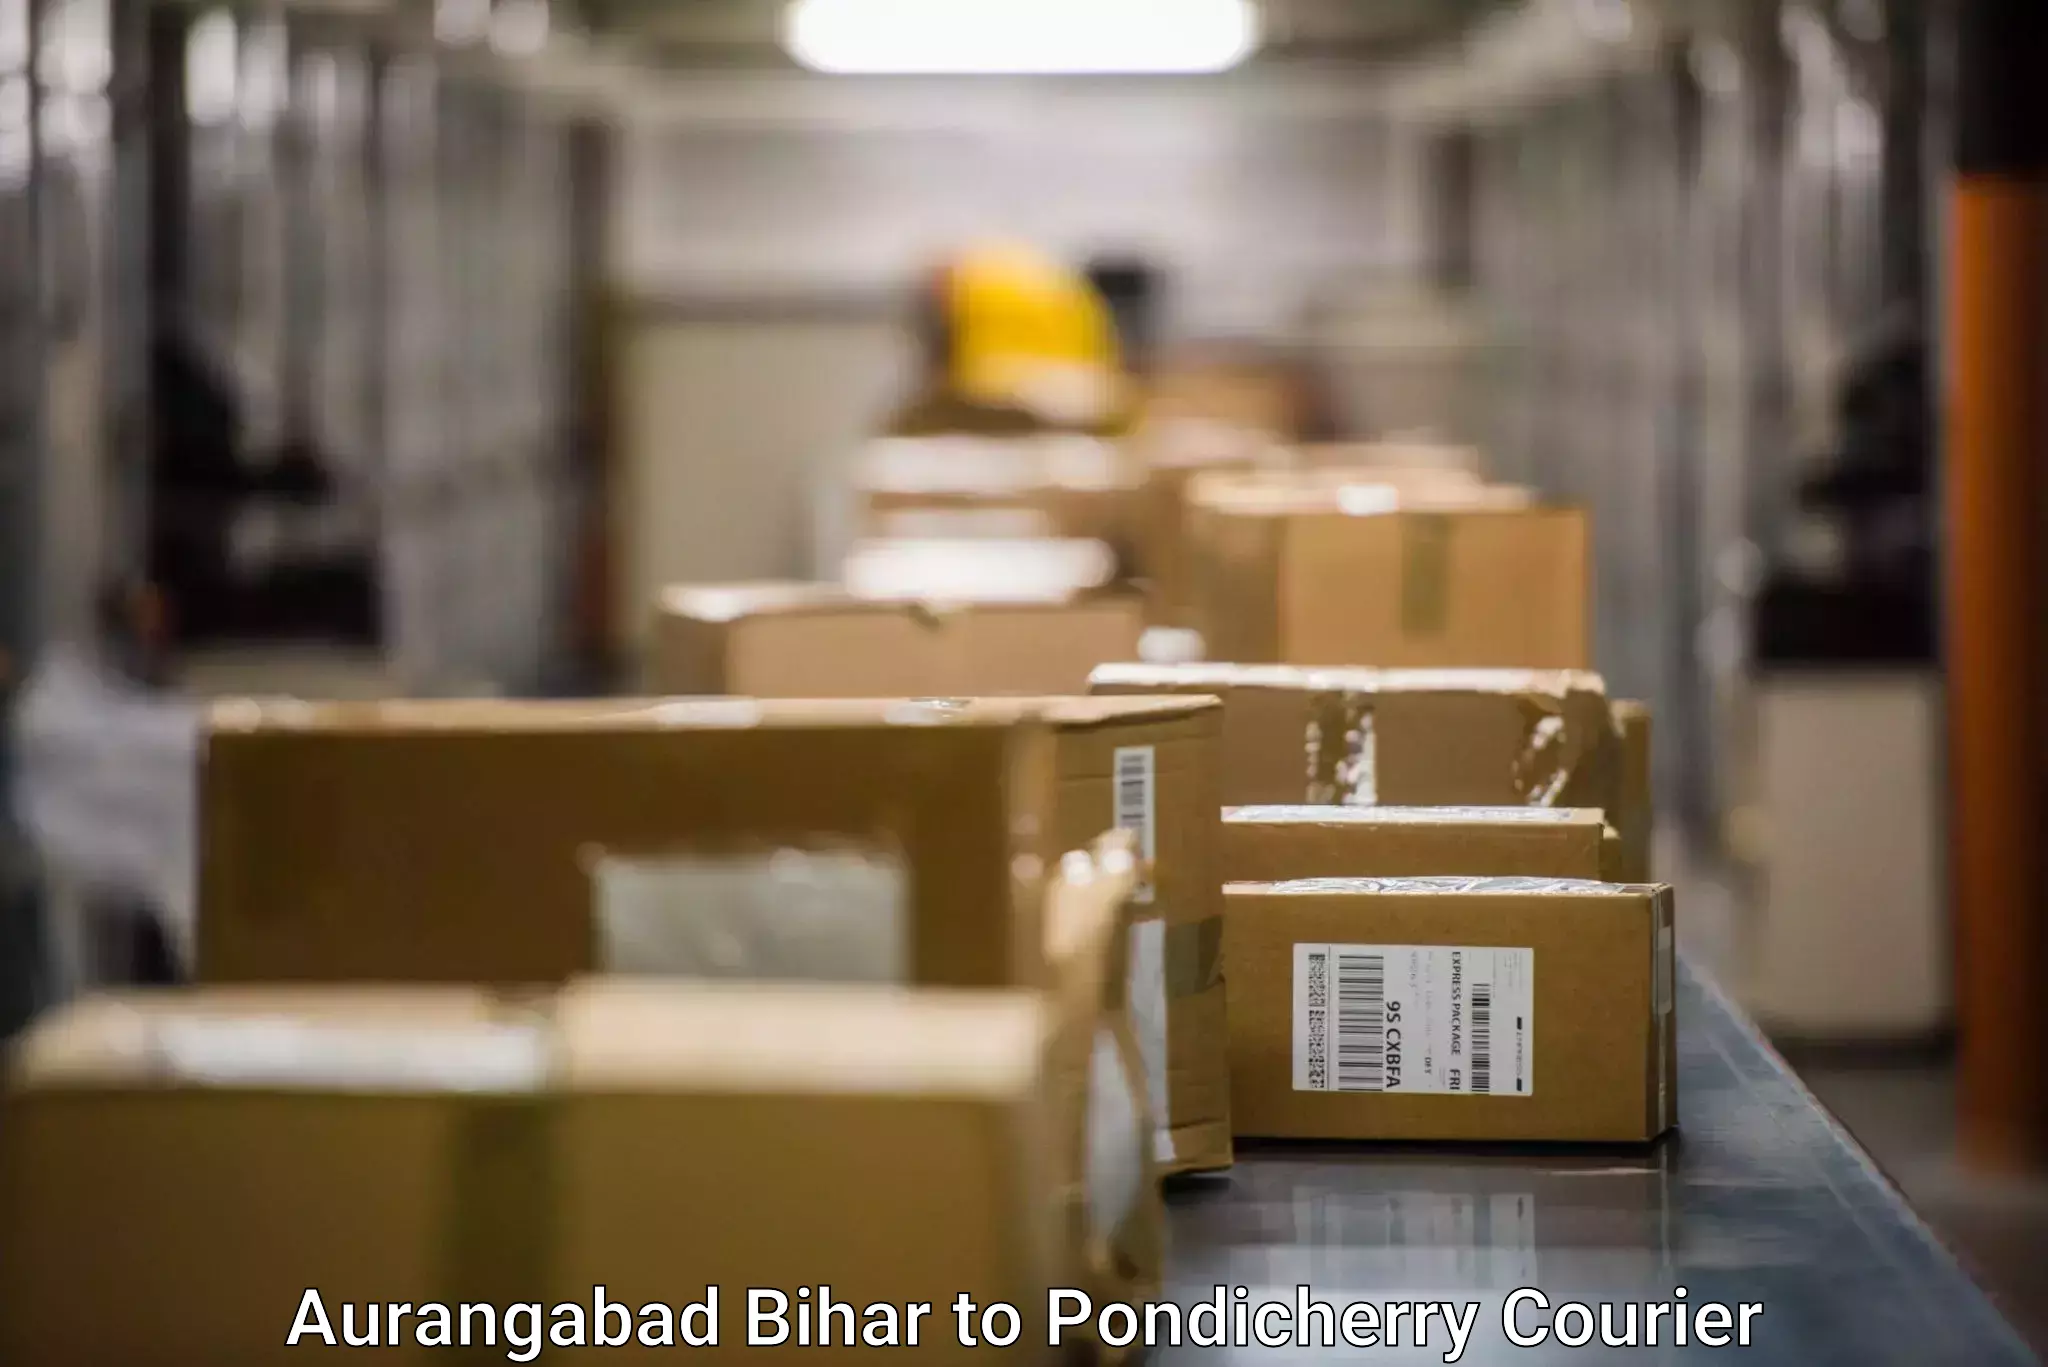 Courier services Aurangabad Bihar to Pondicherry